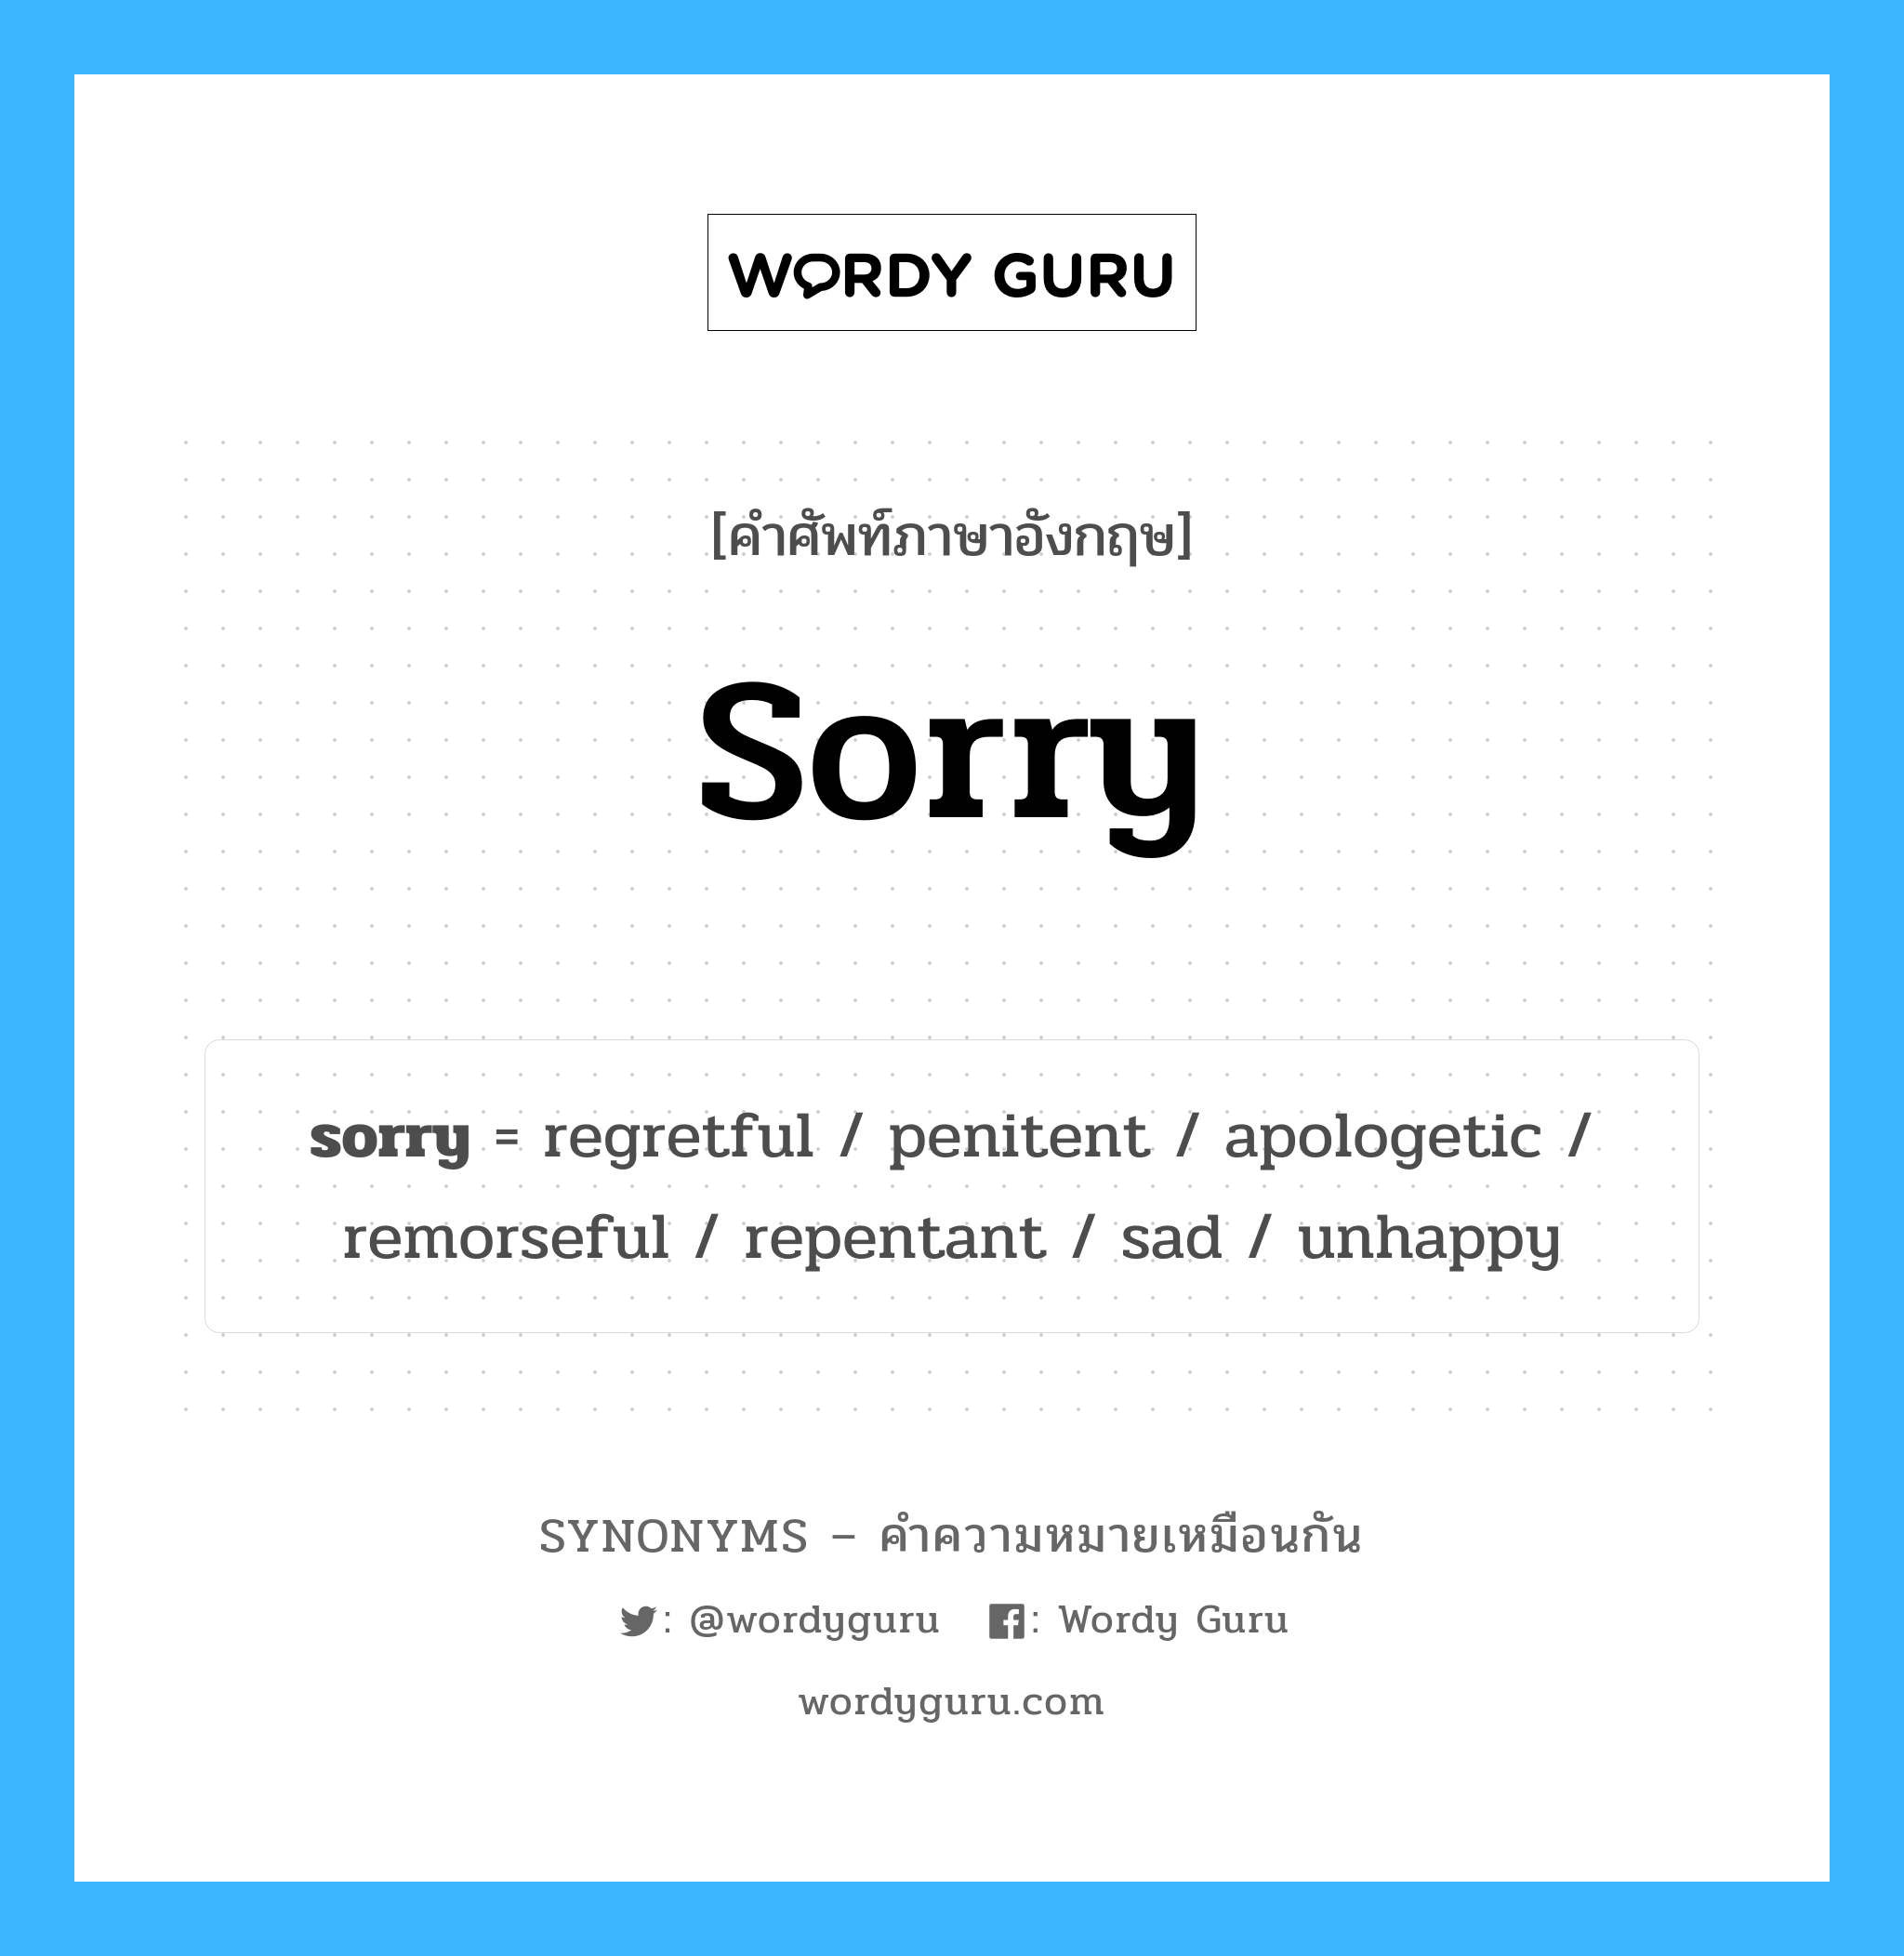 unhappy เป็นหนึ่งใน sorry และมีคำอื่น ๆ อีกดังนี้, คำศัพท์ภาษาอังกฤษ unhappy ความหมายคล้ายกันกับ sorry แปลว่า ไม่มีความสุข หมวด sorry